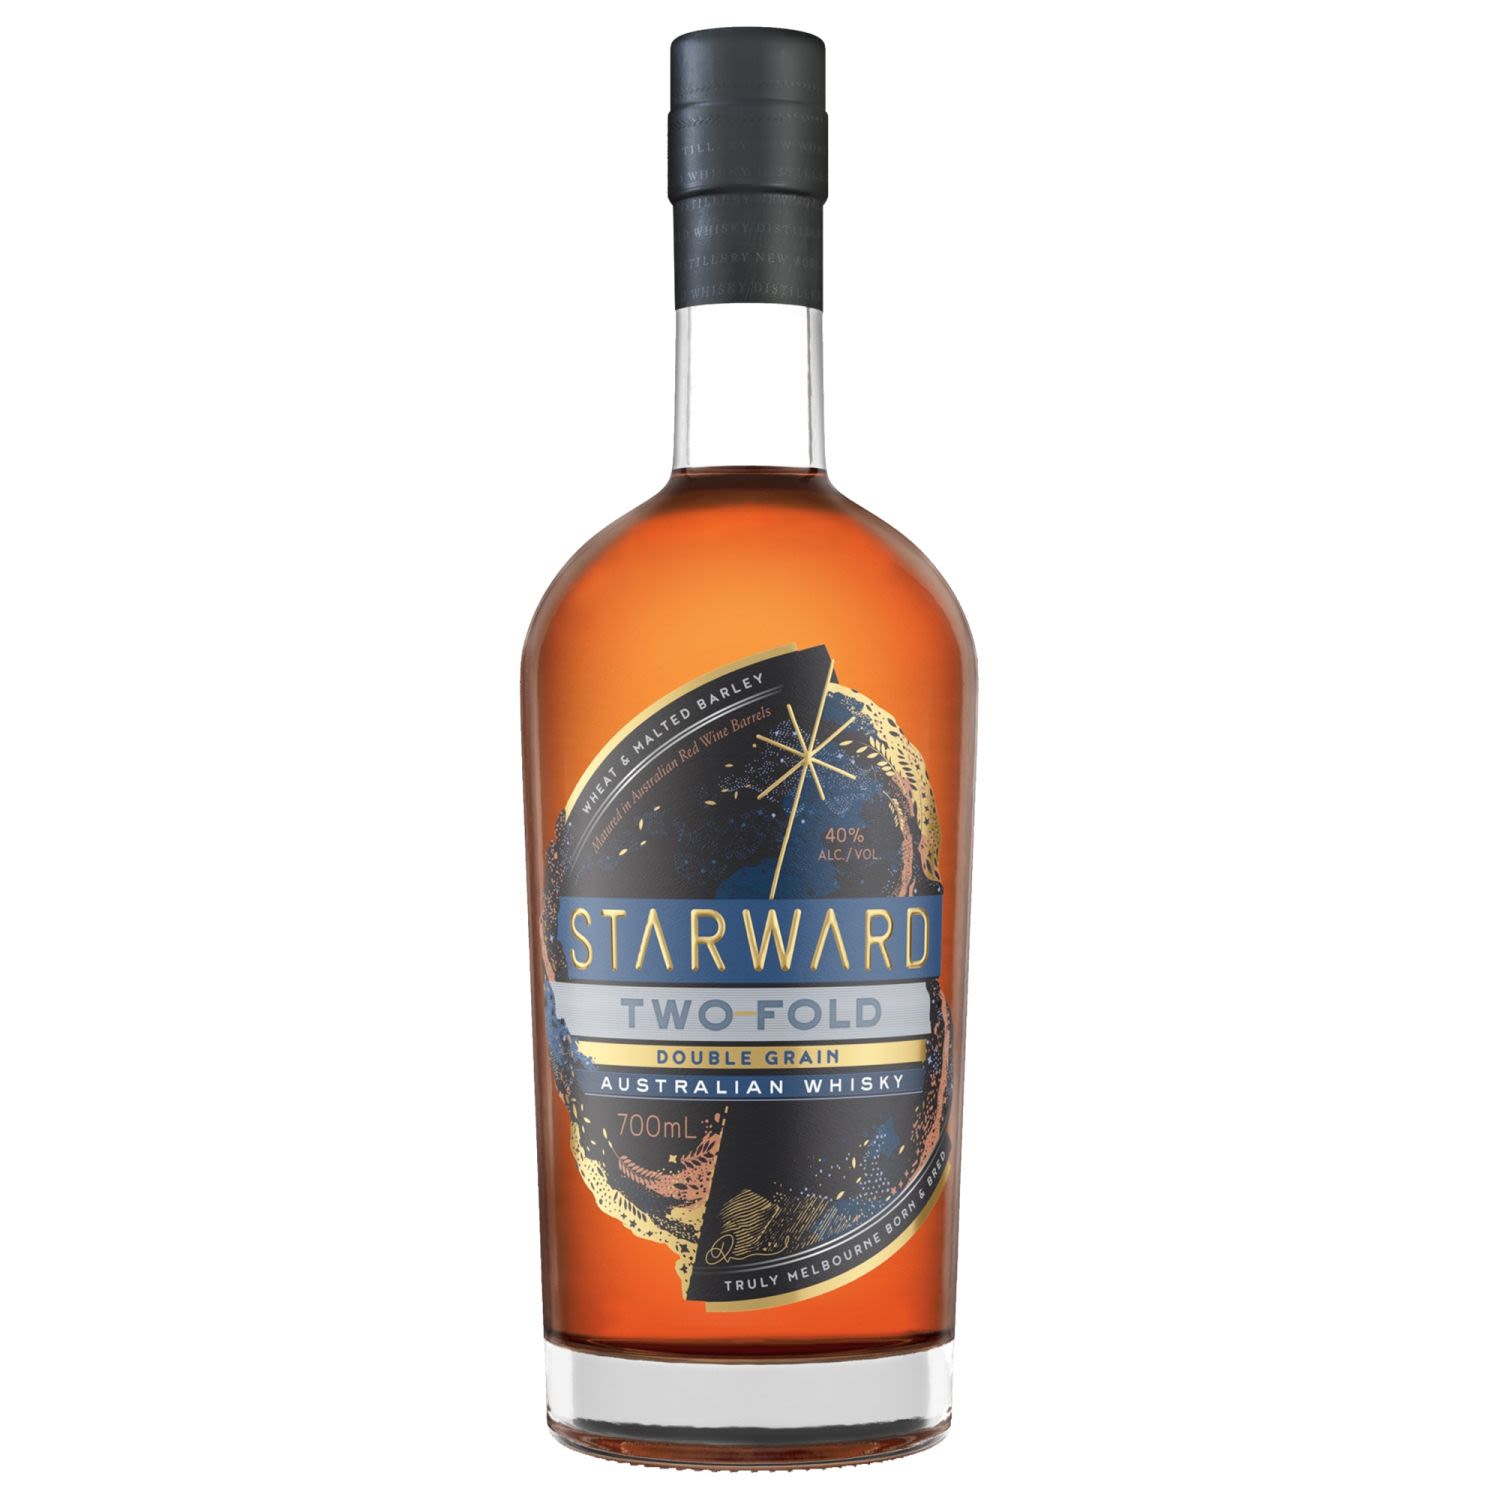 Starward Two Fold Double Grain Australian Whisky 700mL Bottle